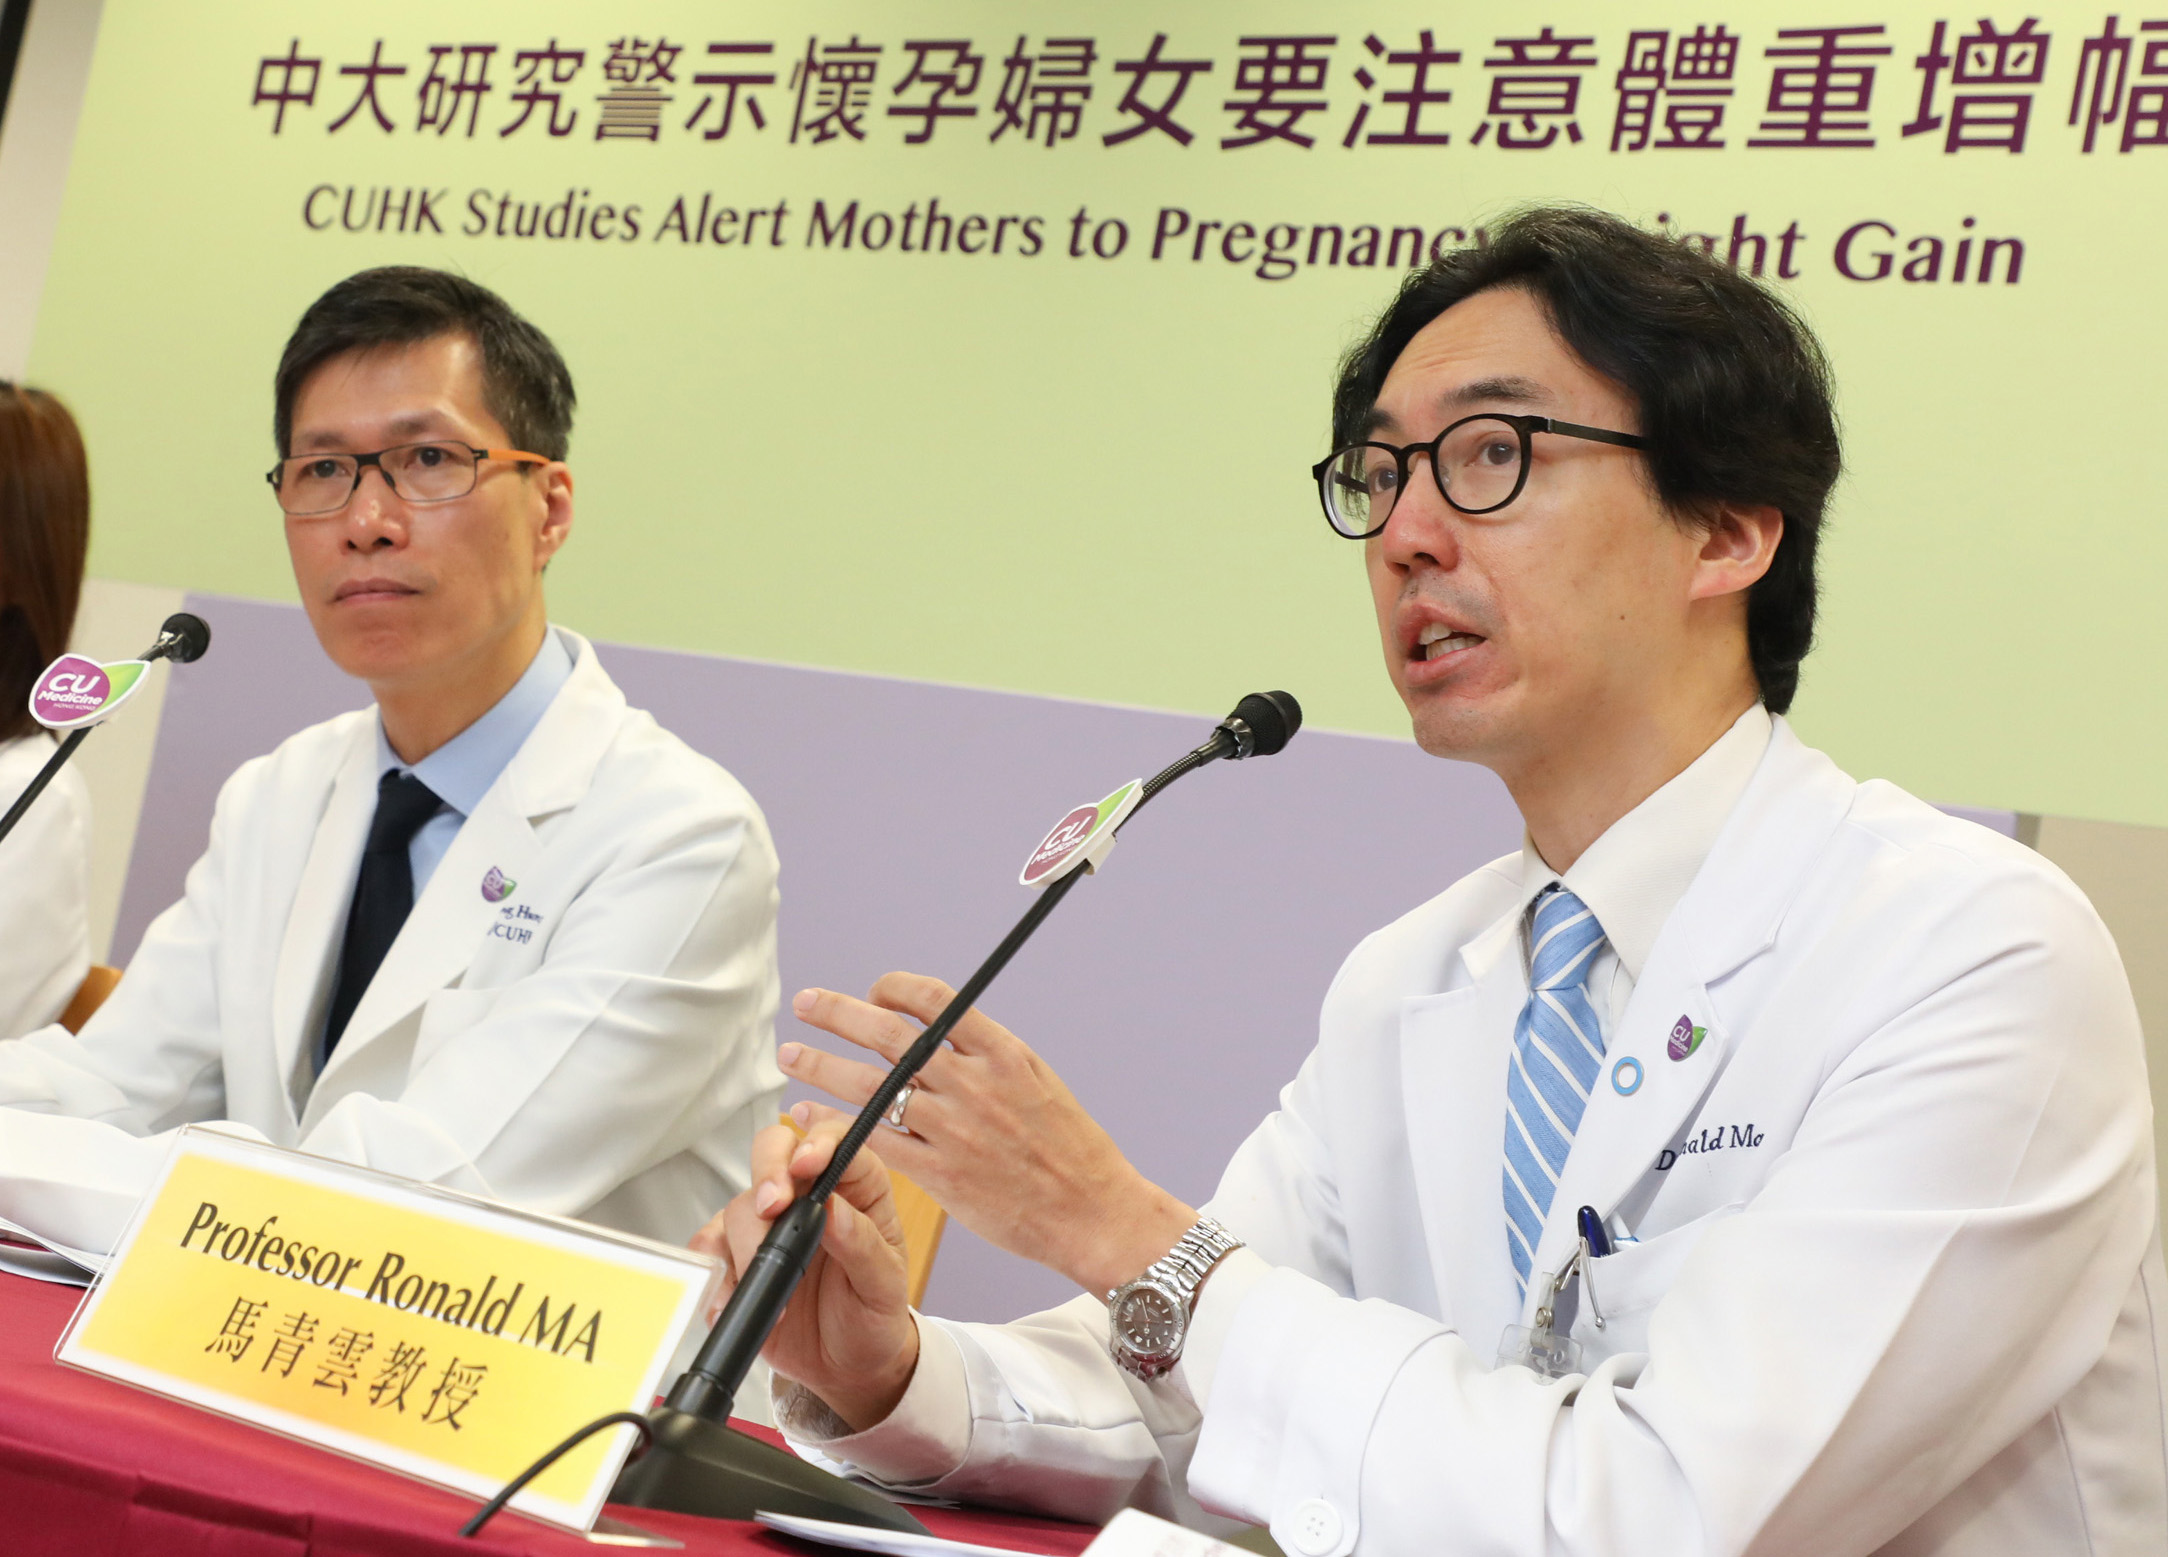 马青云教授（右）警示准妈妈们要注意控制体重，并在怀孕期间保持健康的饮食和生活方式，以预防患上妊娠糖尿病。